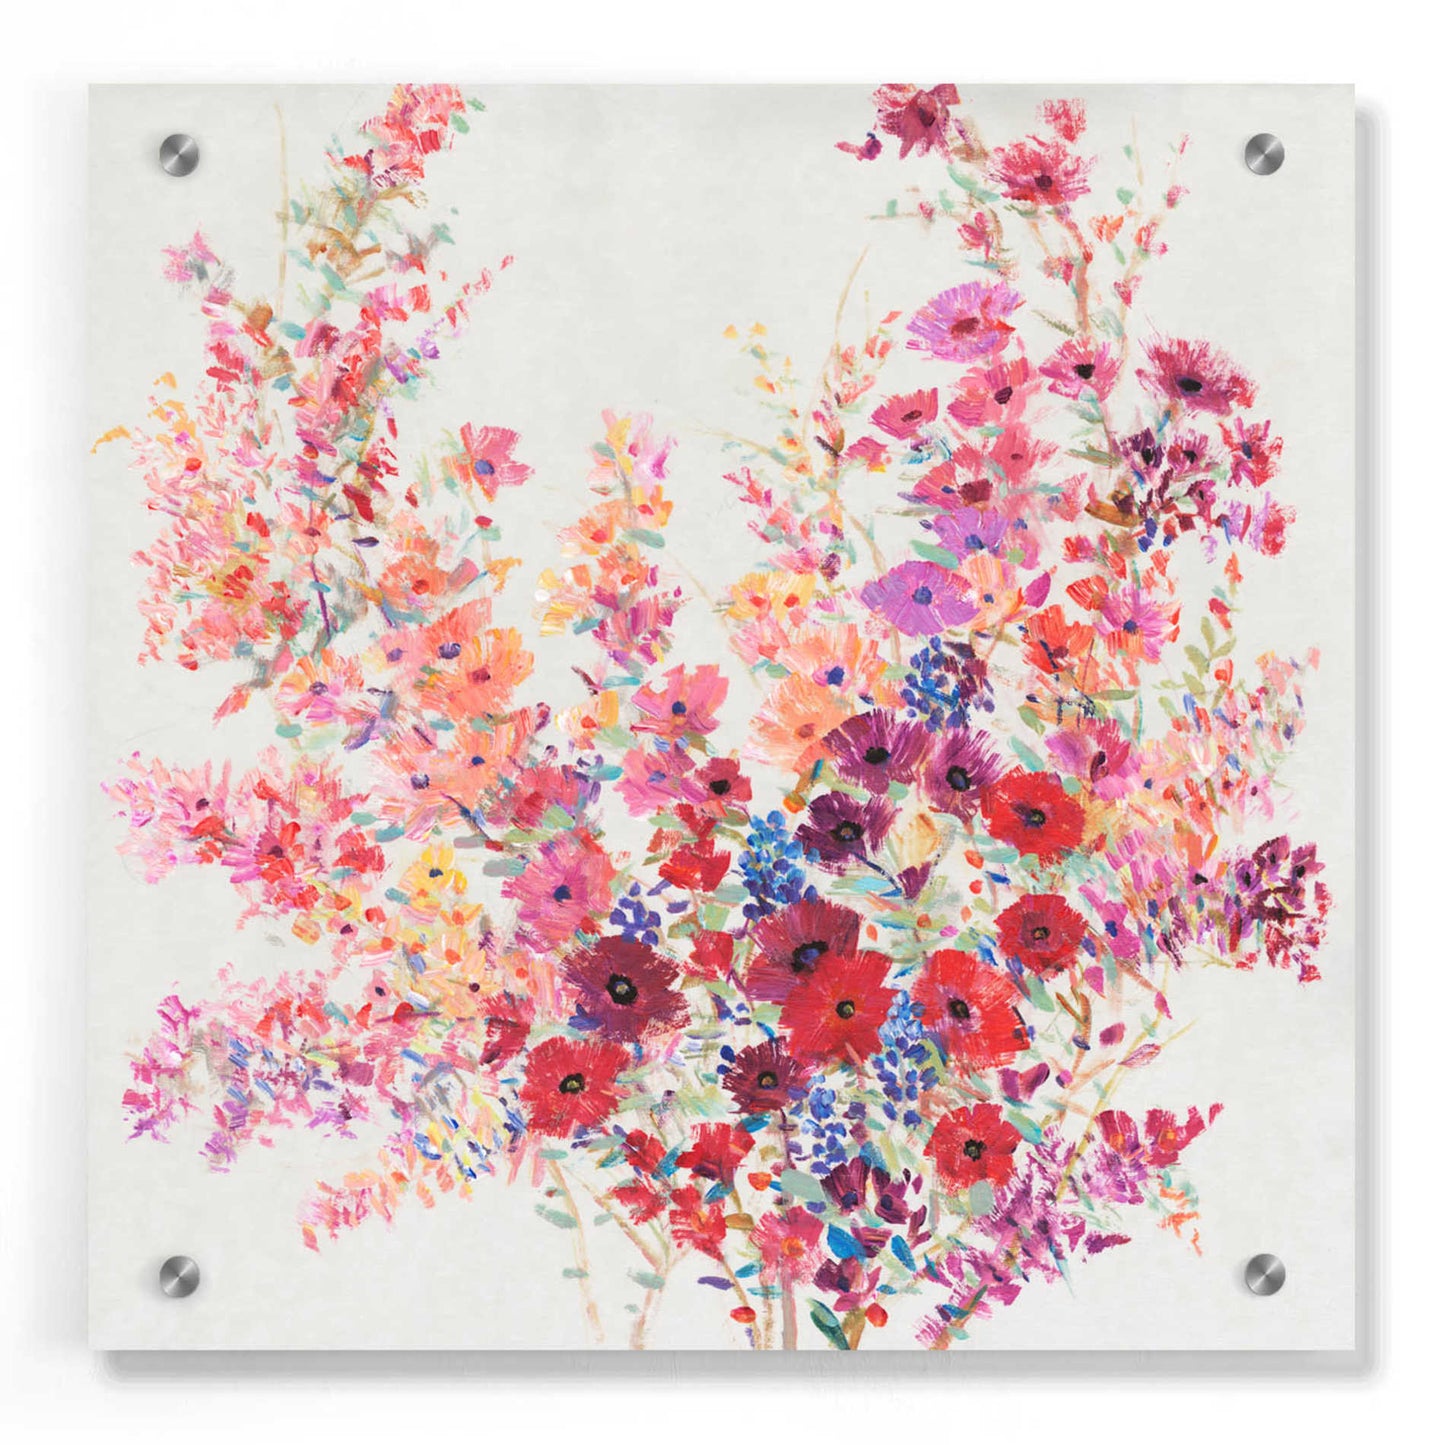 Epic Art 'Flowers on a Vine II' by Tim O'Toole, Acrylic Glass Wall Art,36x36